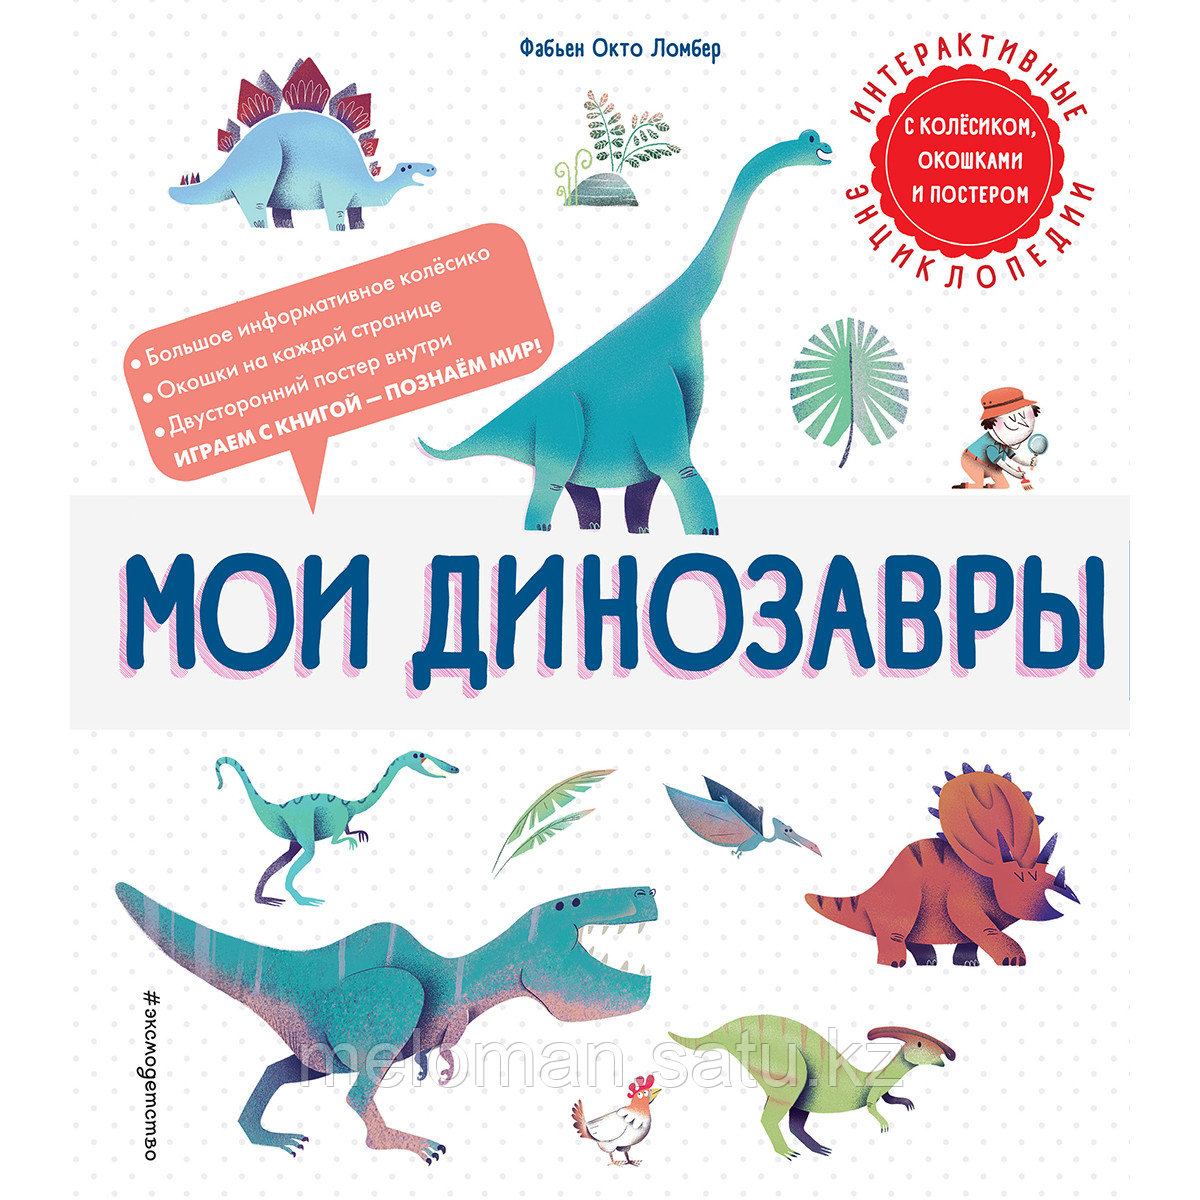 Ломбер Ф. О.: Мои динозавры